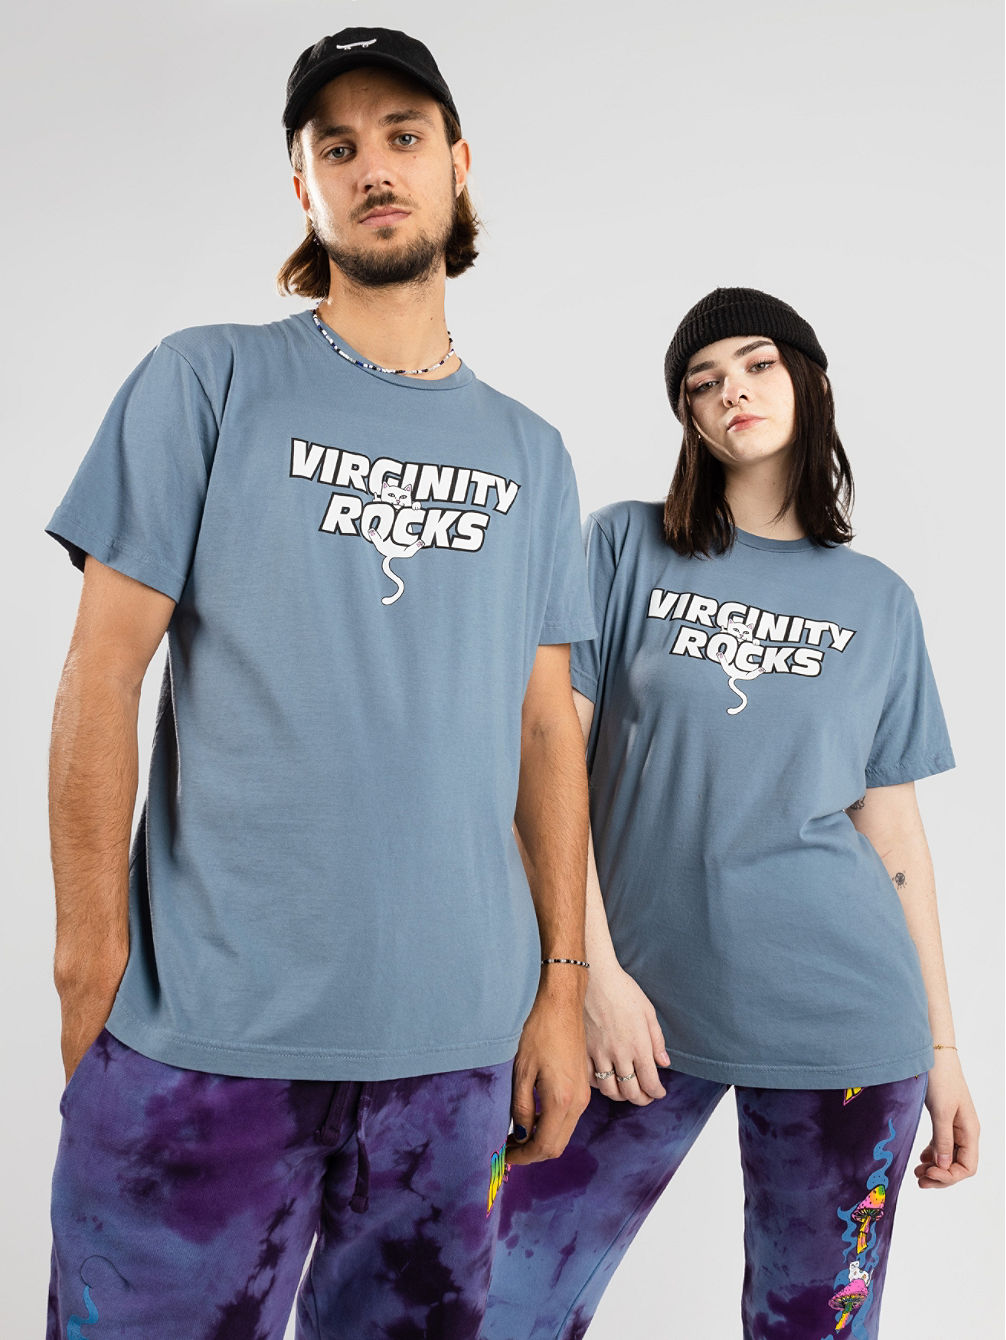 Virginity Rocks X Nerm Tricko